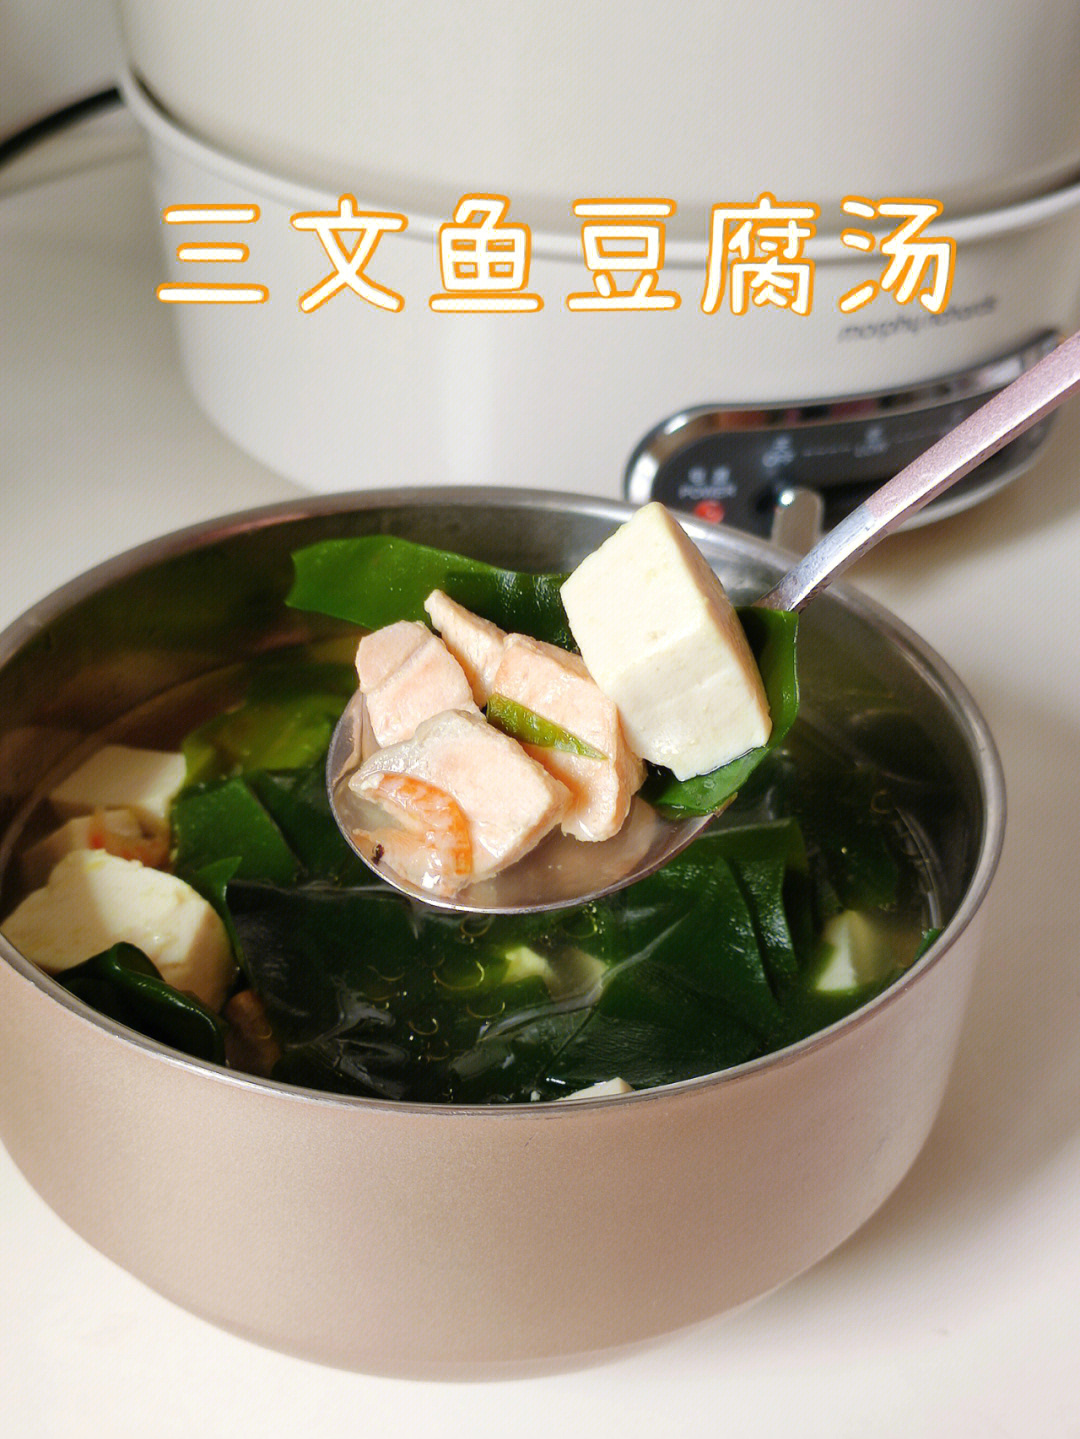 每个月都会给自己做的补钙汤莫过于三文鱼豆腐汤了,营养丰富而且做法